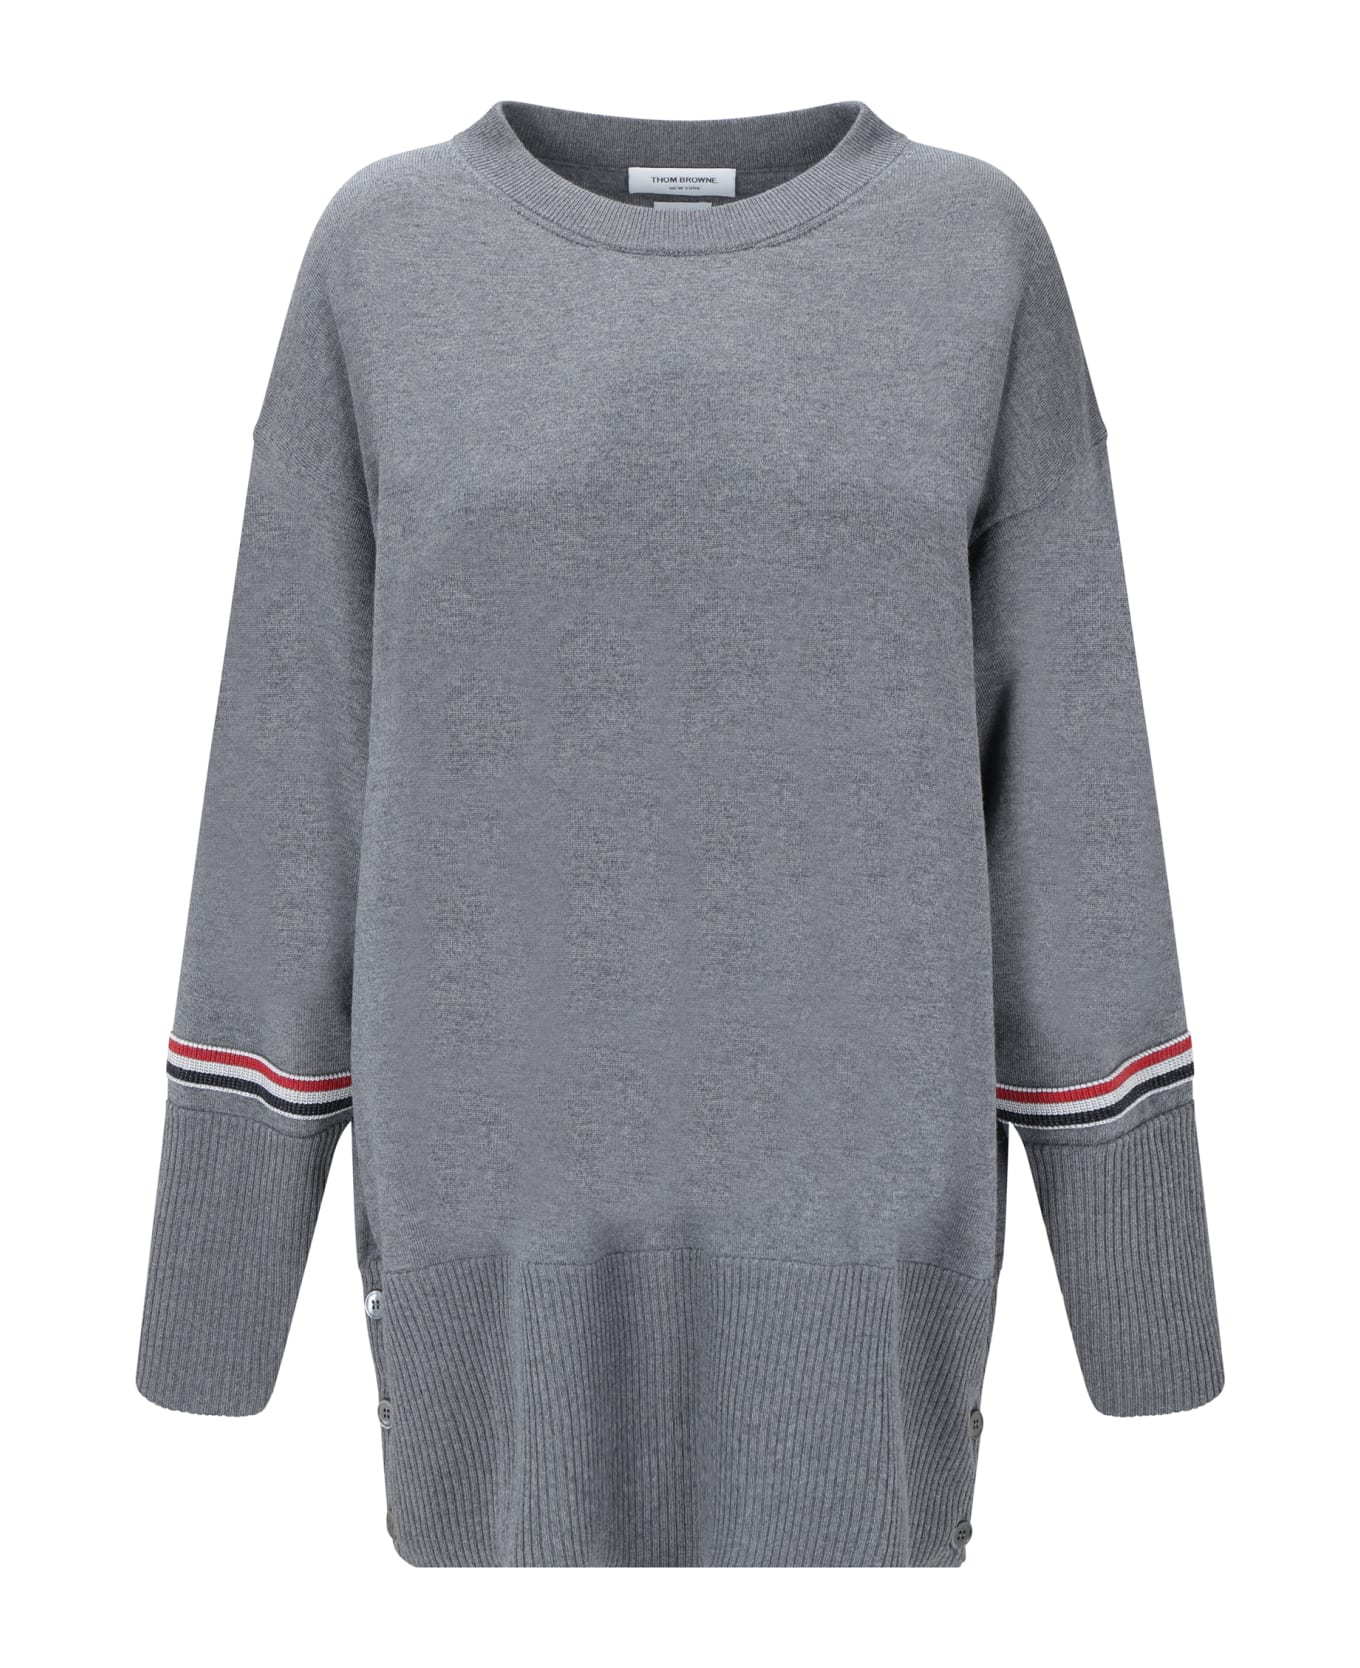 Thom Browne Sweater - Med Grey ニットウェア